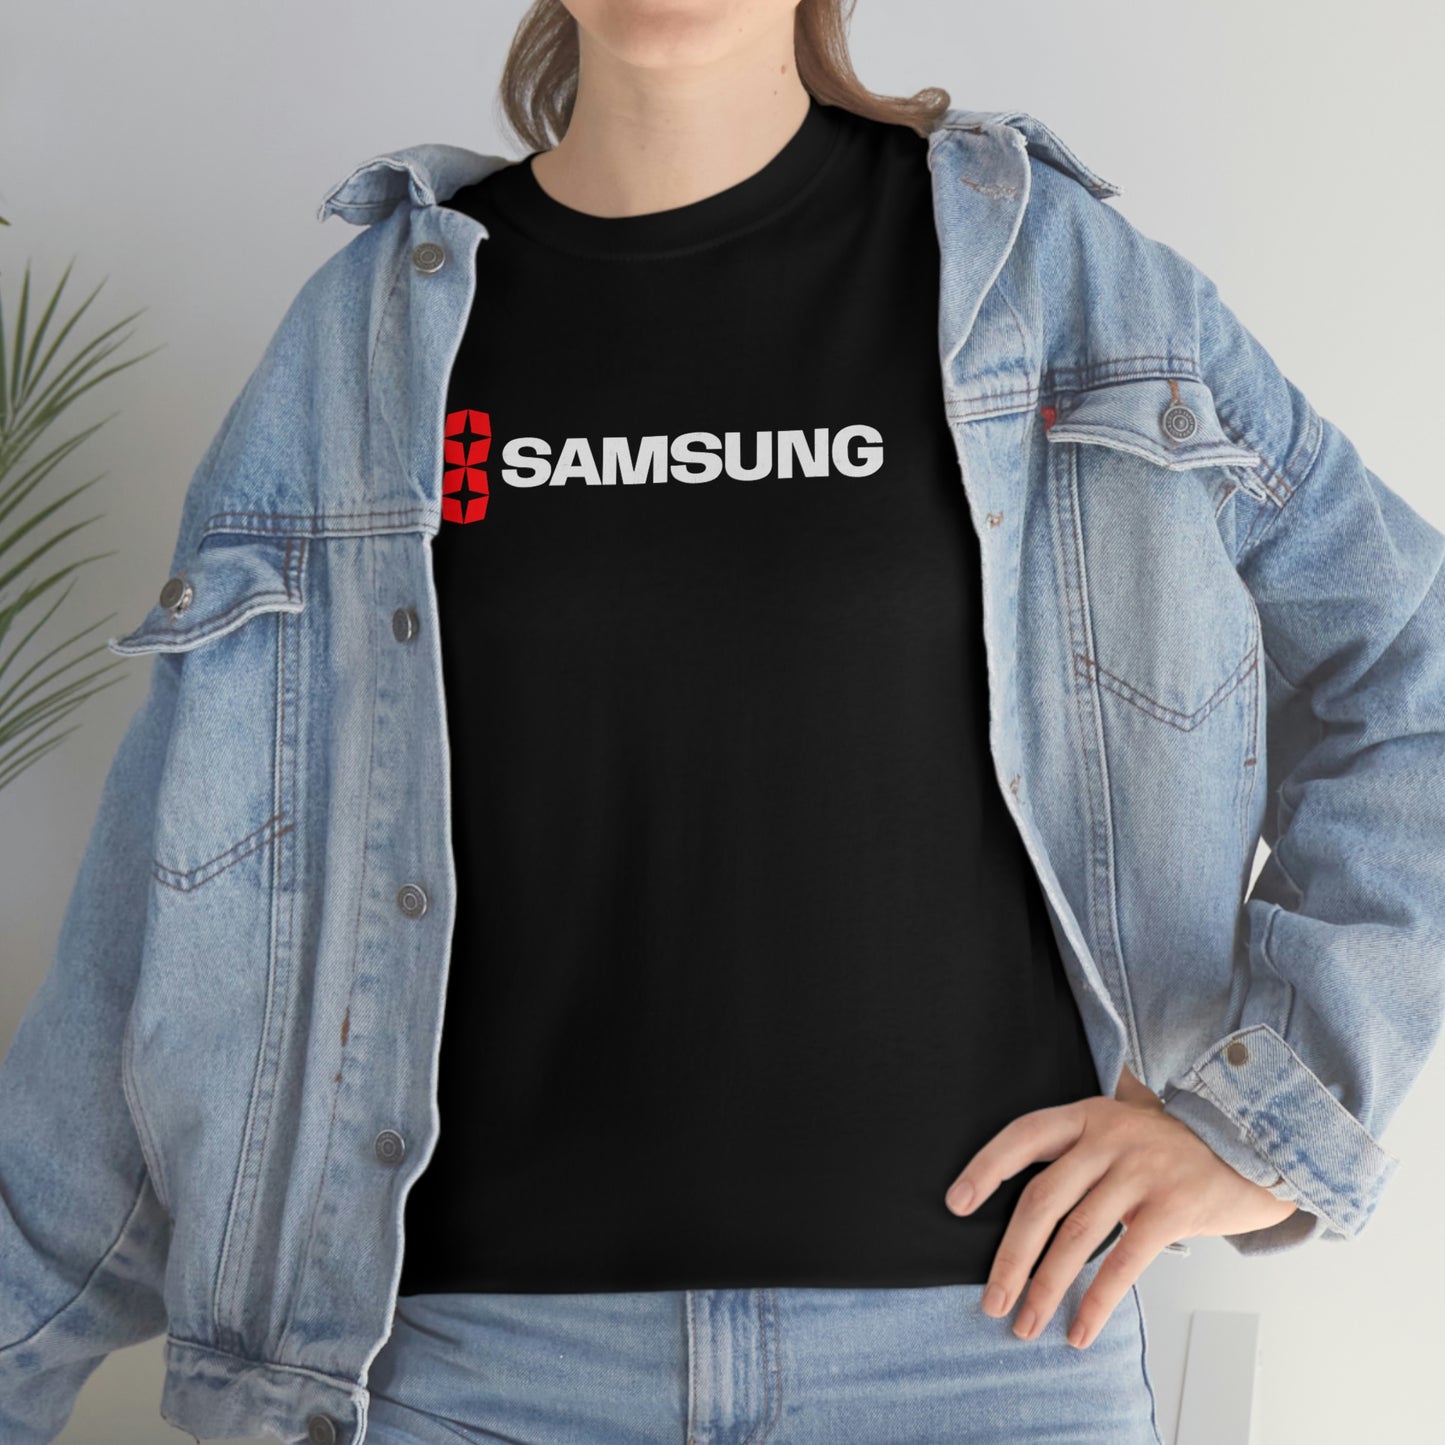 Samsung T-Shirt